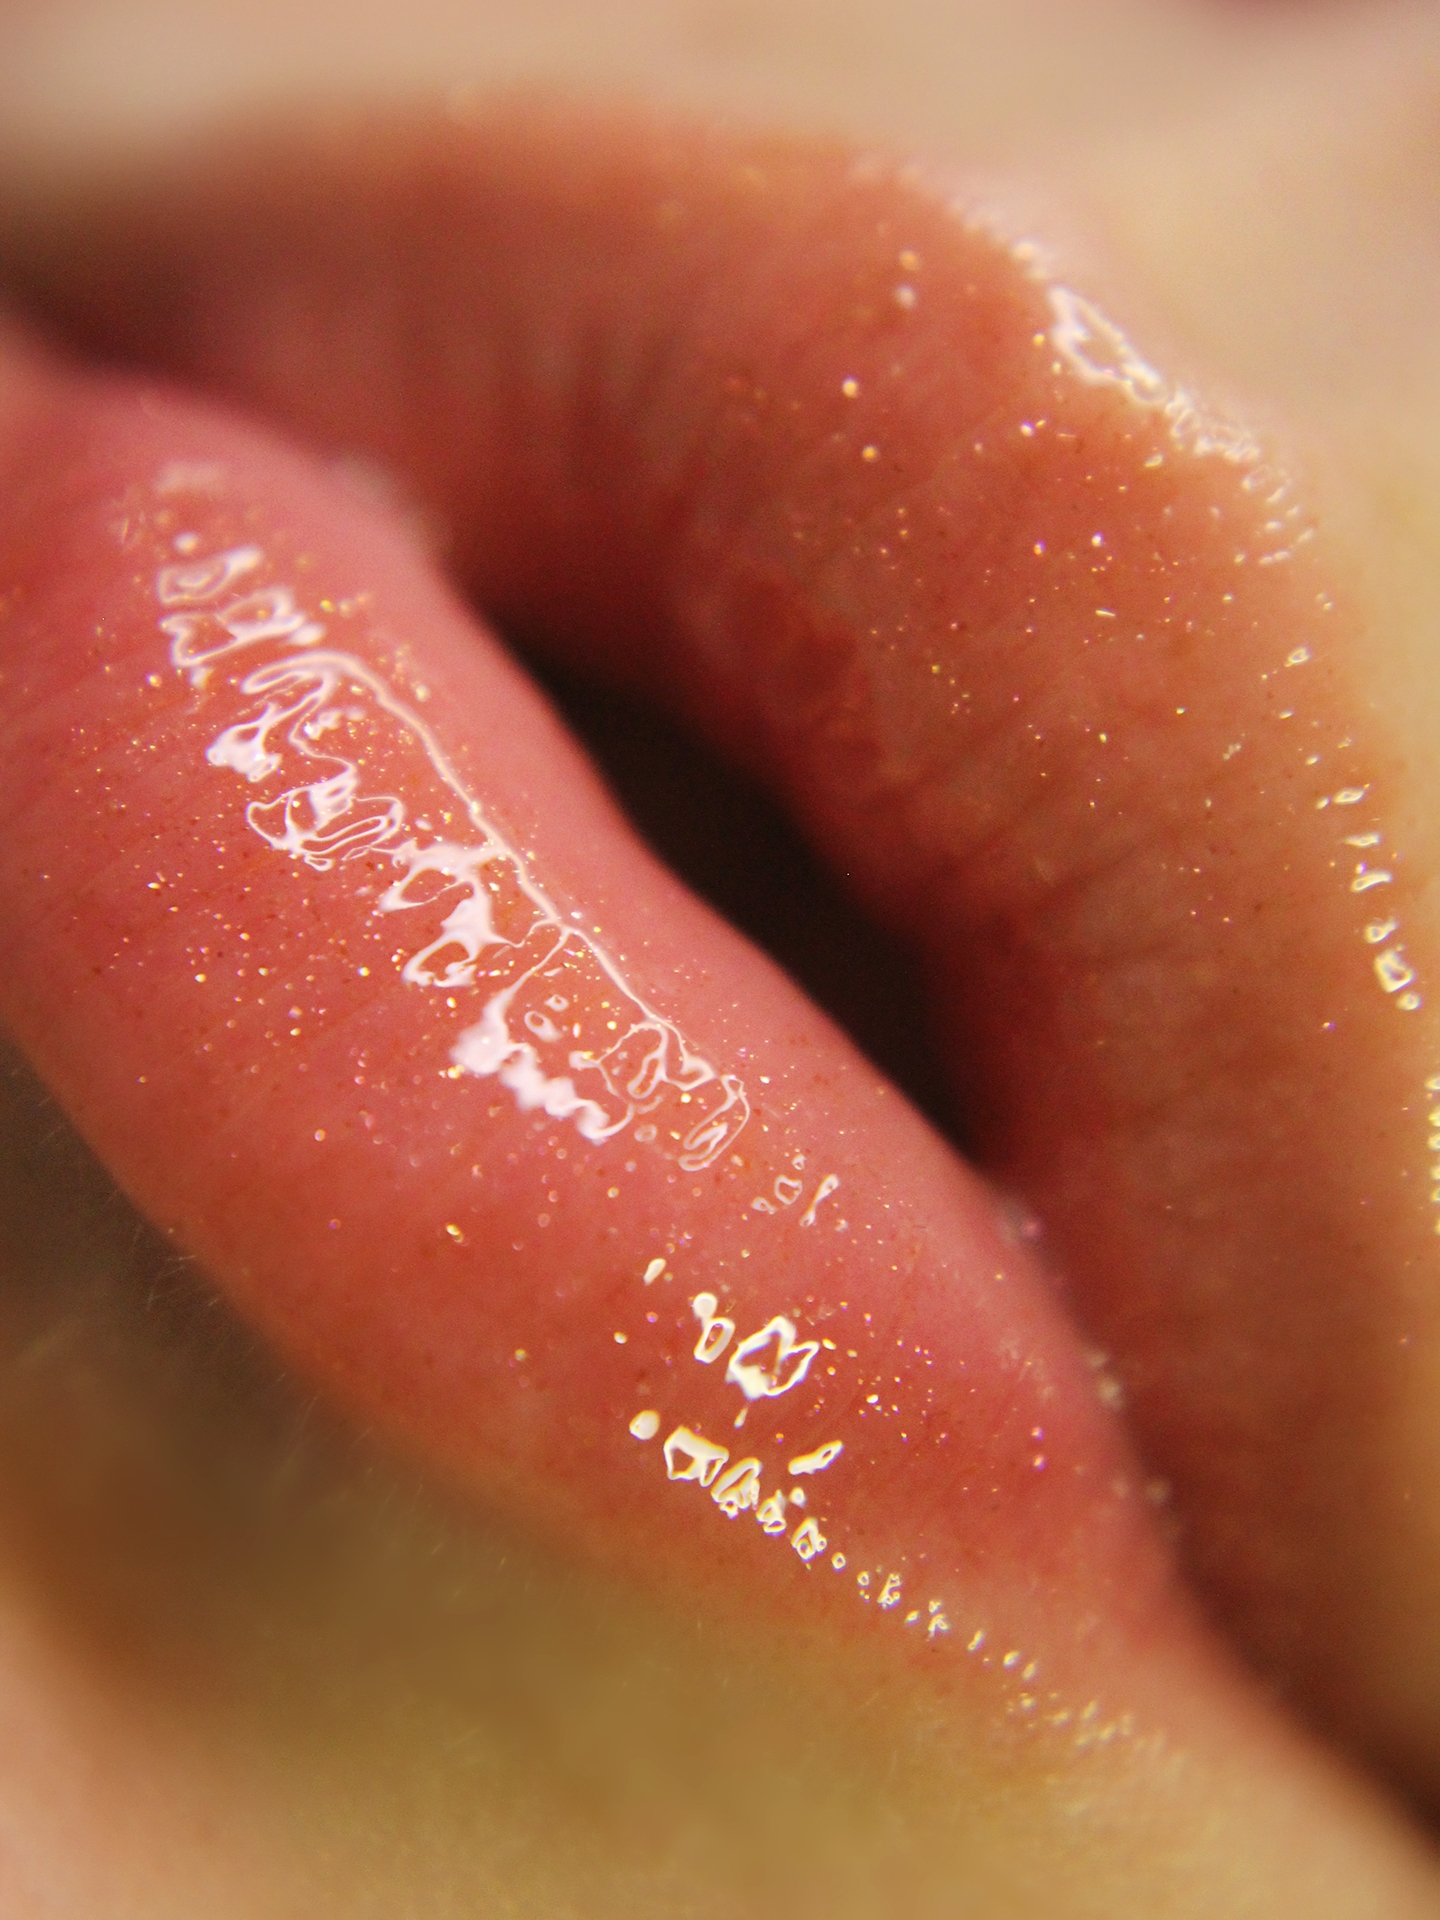 Пекуча новинка від Maybelline: чи збільшує губи?